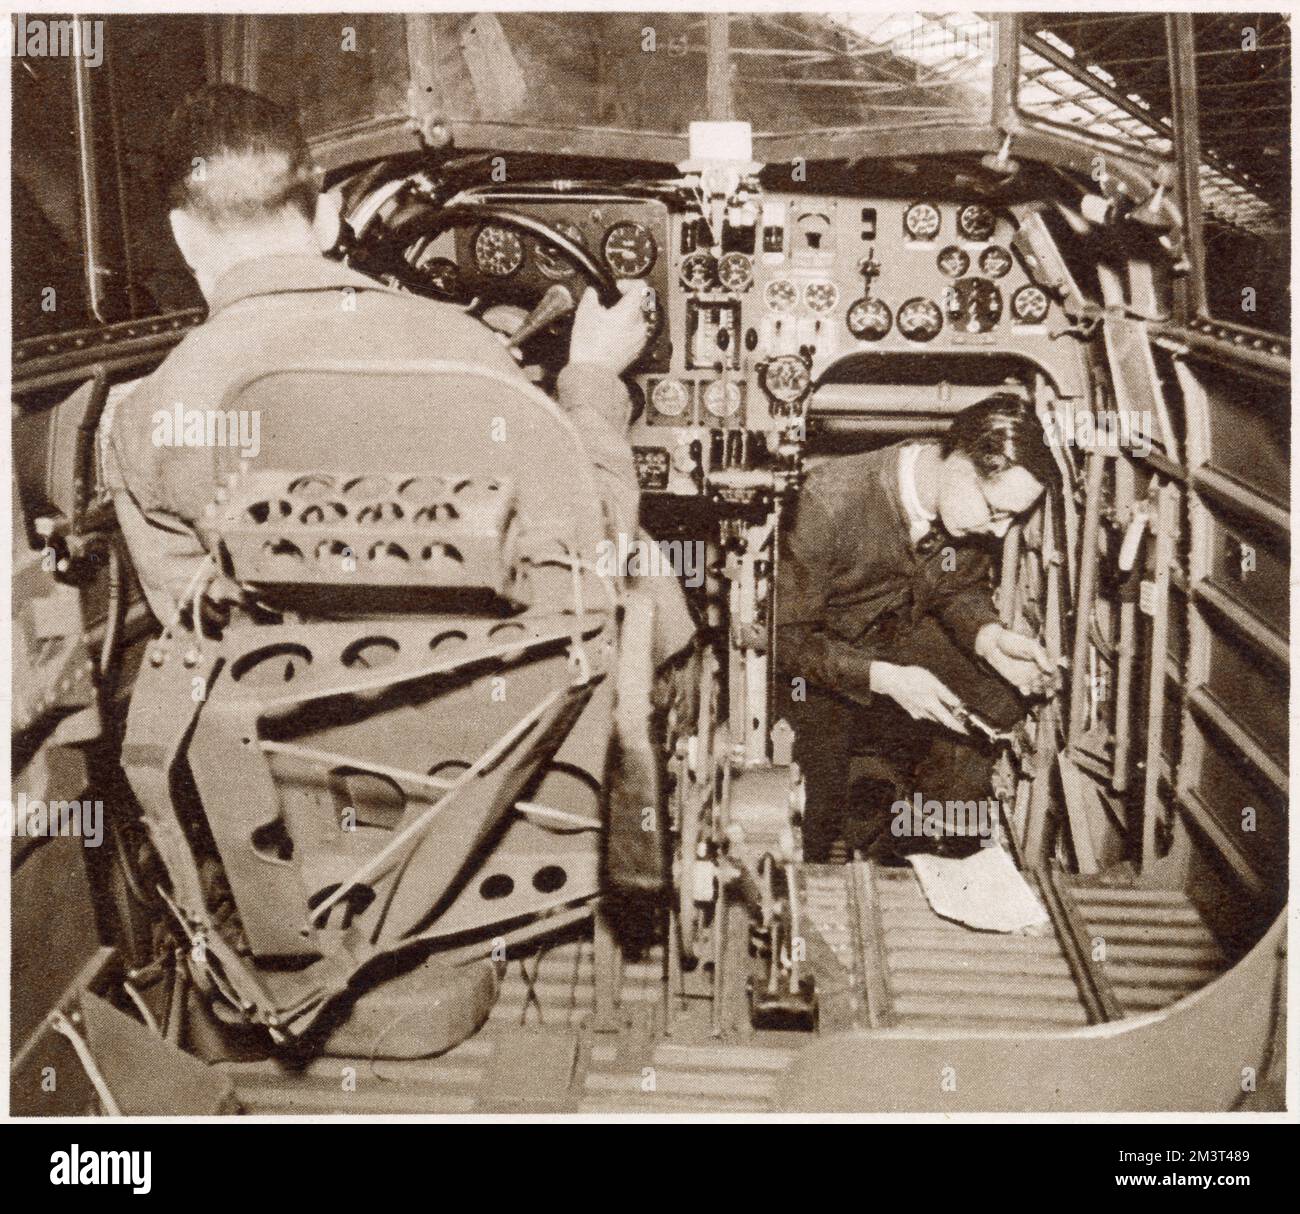 Ich führe Tests in einem fertigen Whitley-Bomber in Armstrong Whitworth in Coventry durch. Männer, die die Kontrollen im Cockpit des Piloten inspizieren. Stockfoto